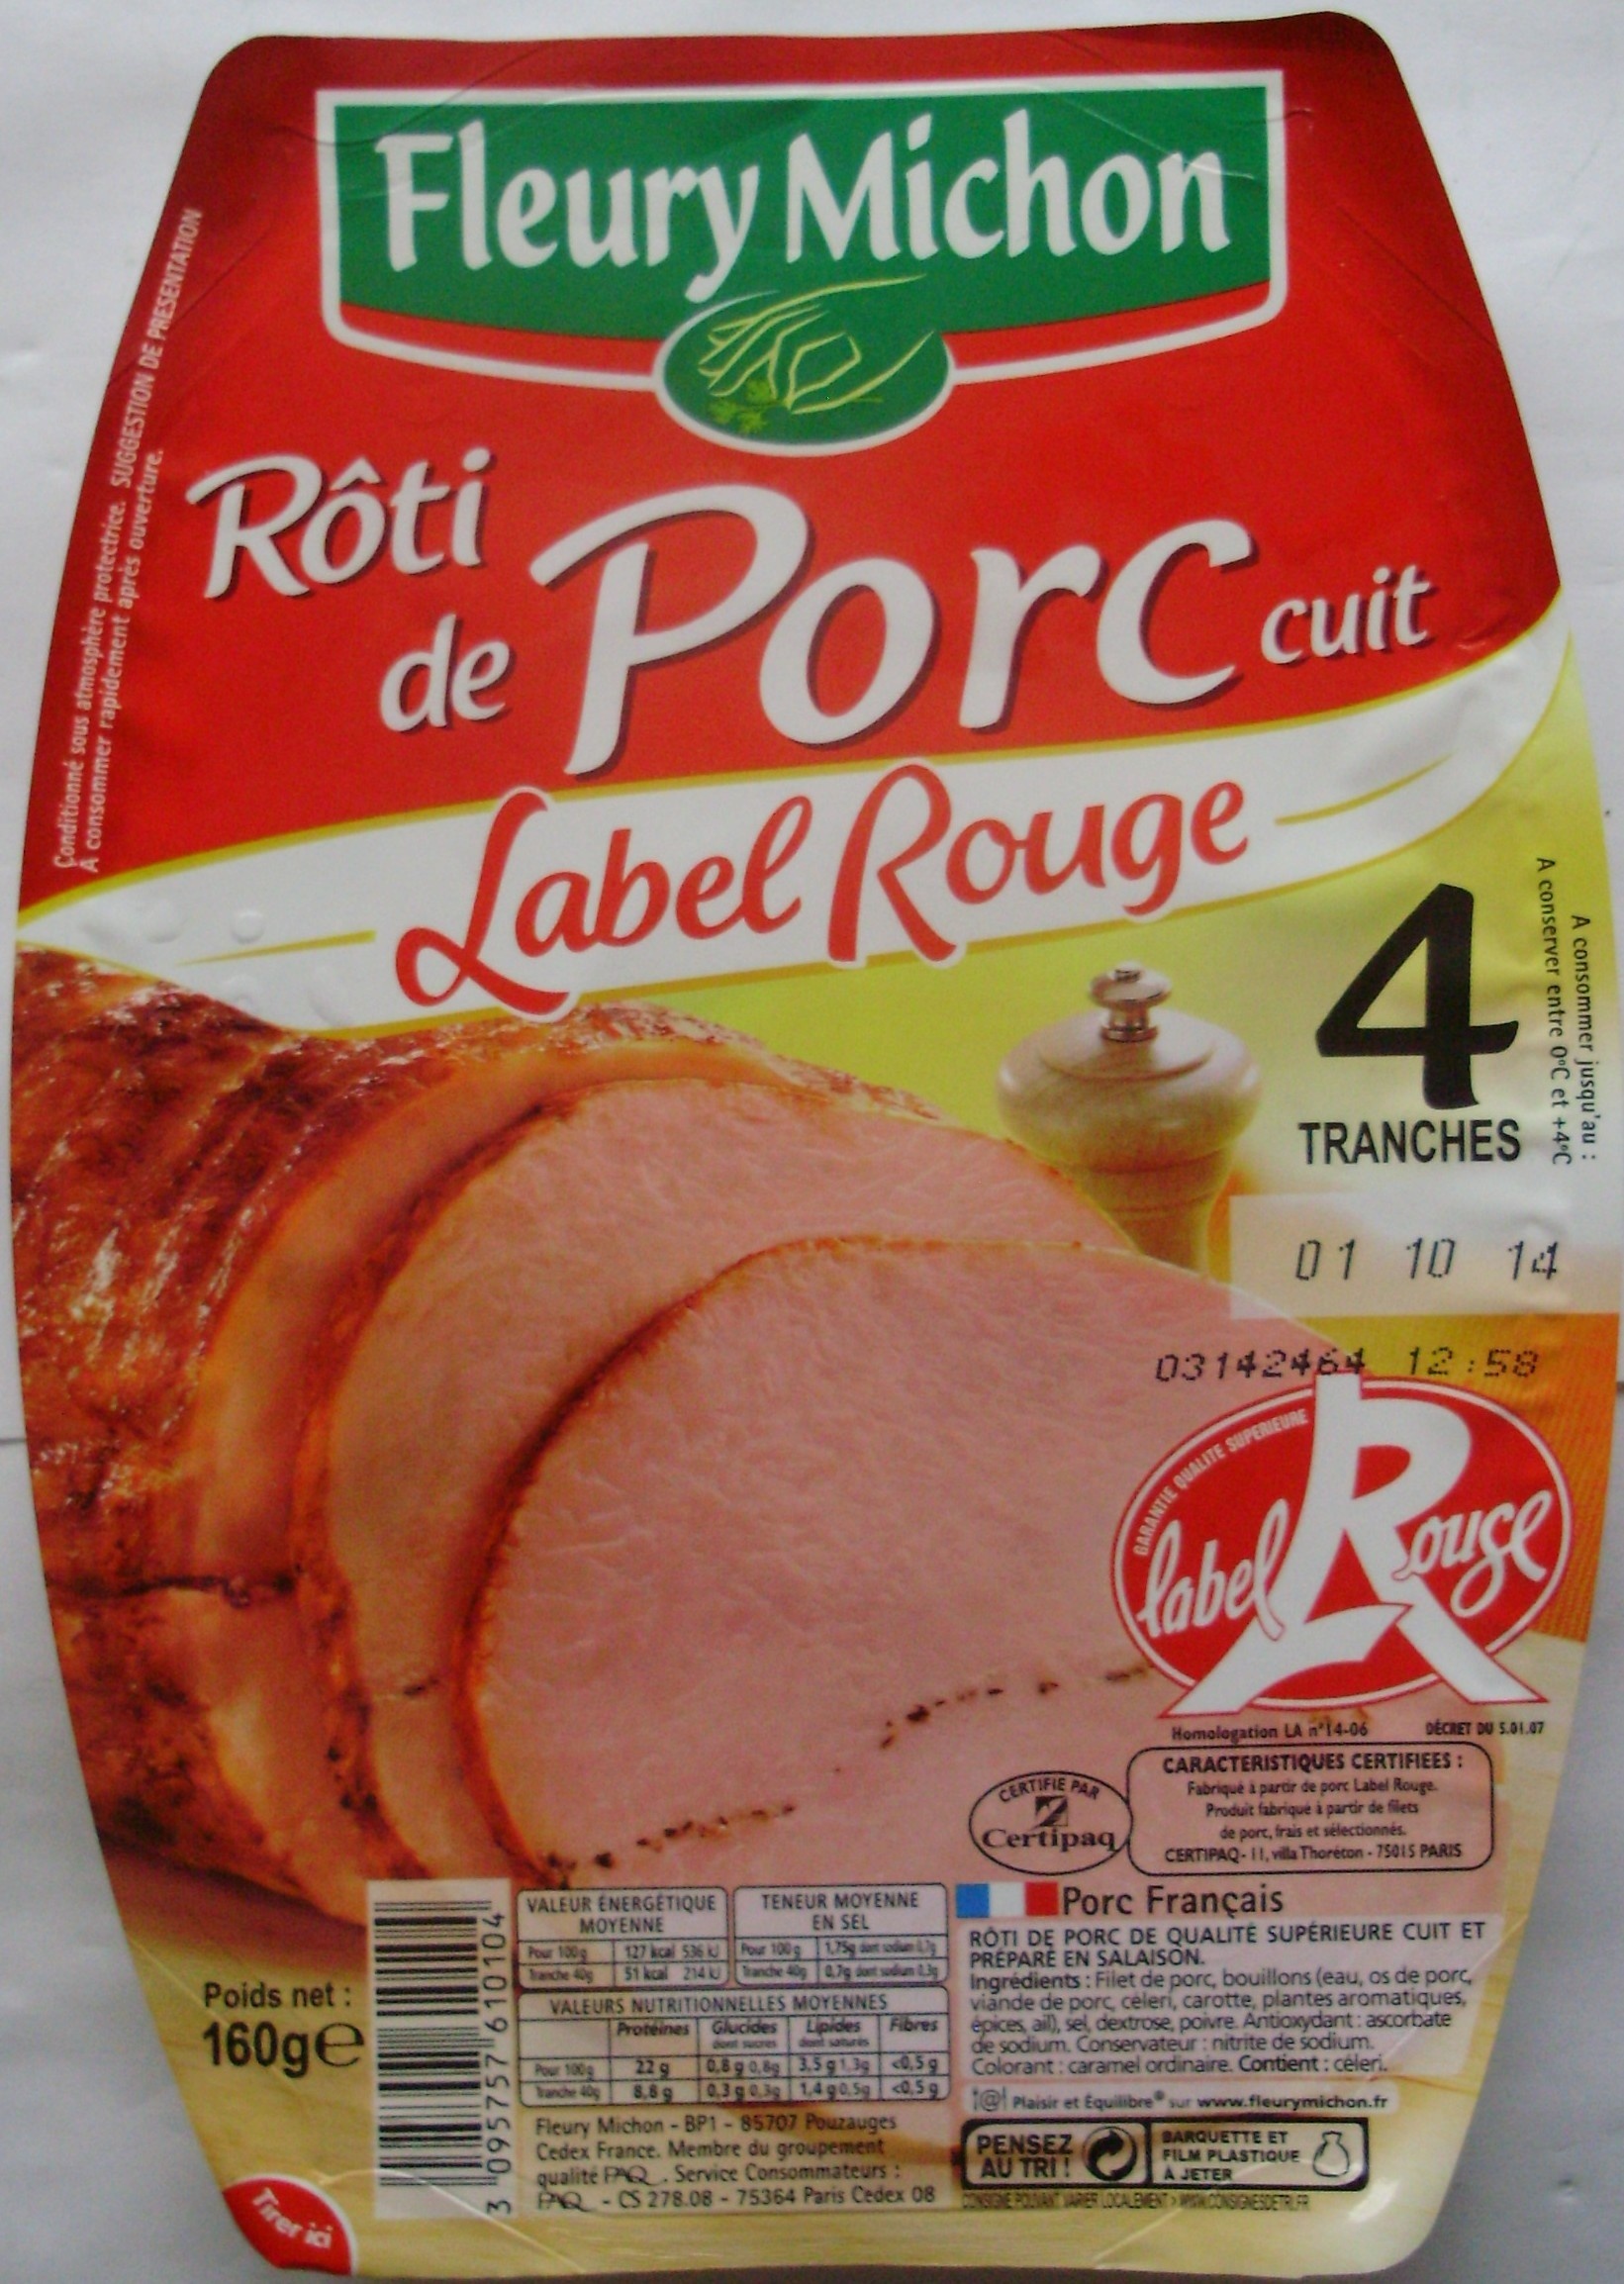 Rôti de Porc cuit, Label Rouge (4 Tranches) - Produit